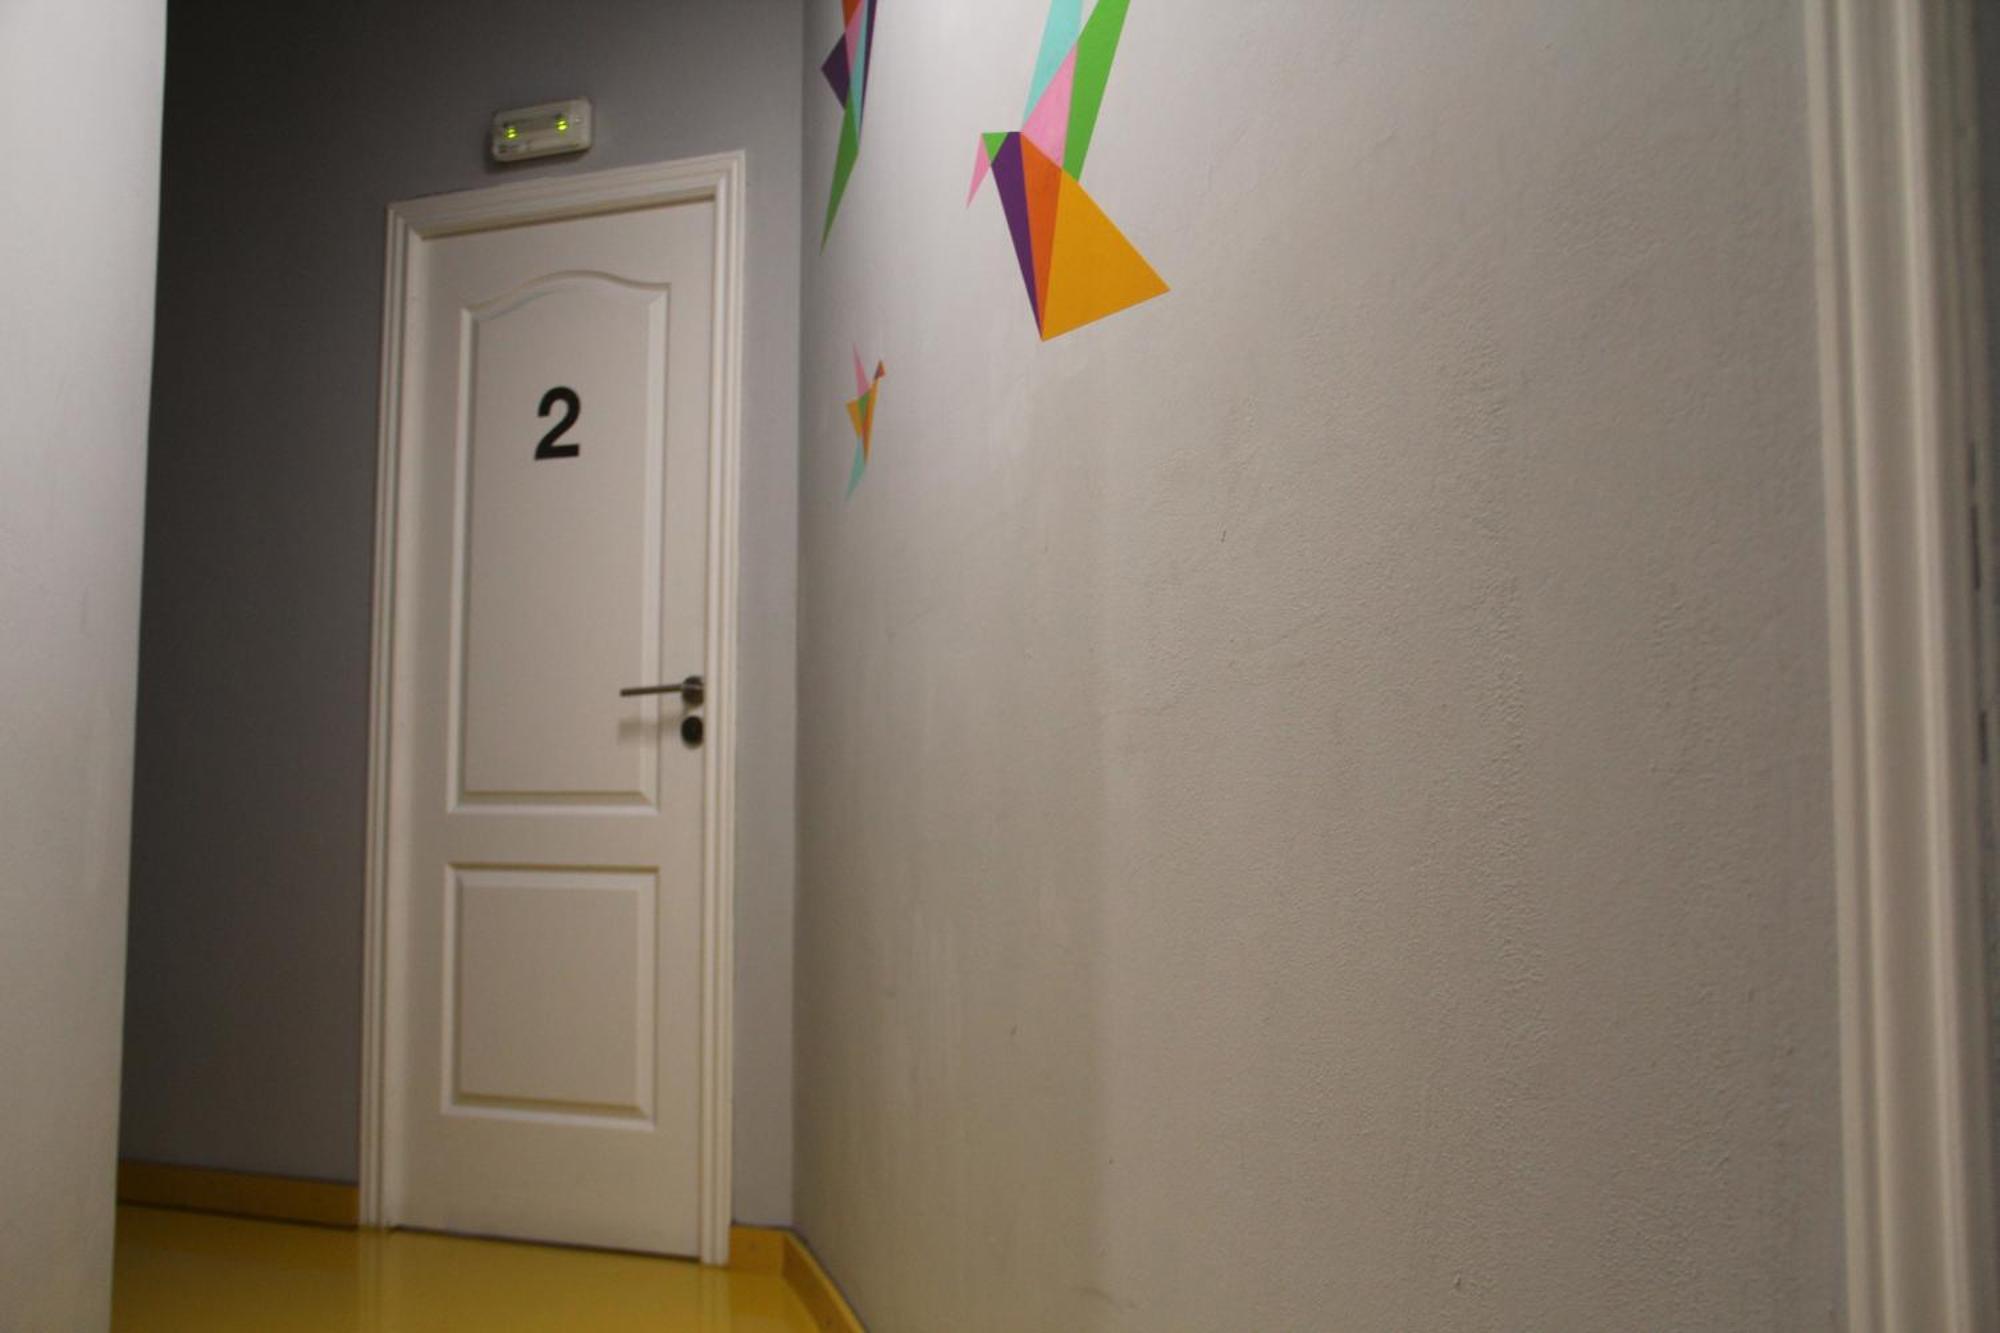 巴塞罗那 绿色睡眠 - 环保认证青年旅舍旅舍 客房 照片